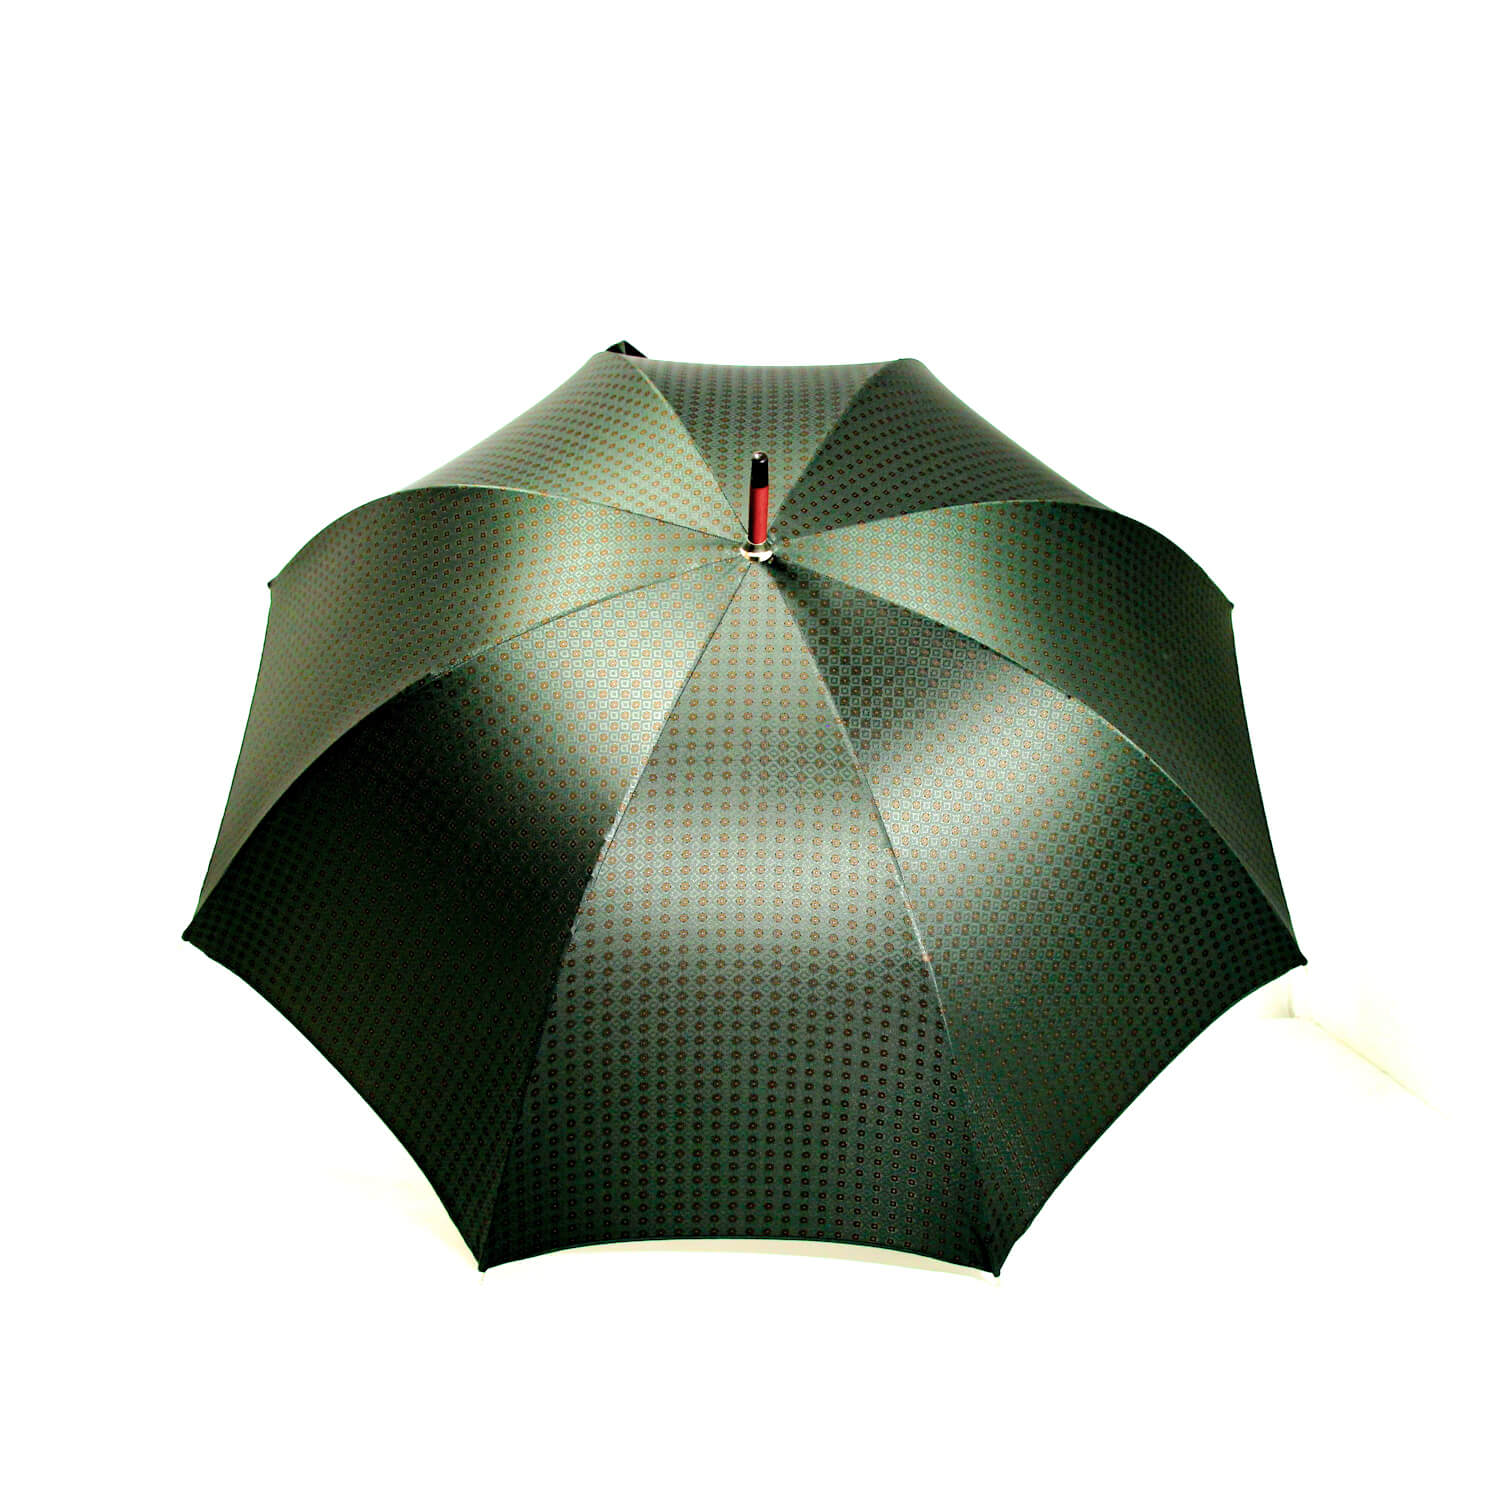 Parapluie-droit-tisse-vert-motifs-marrons